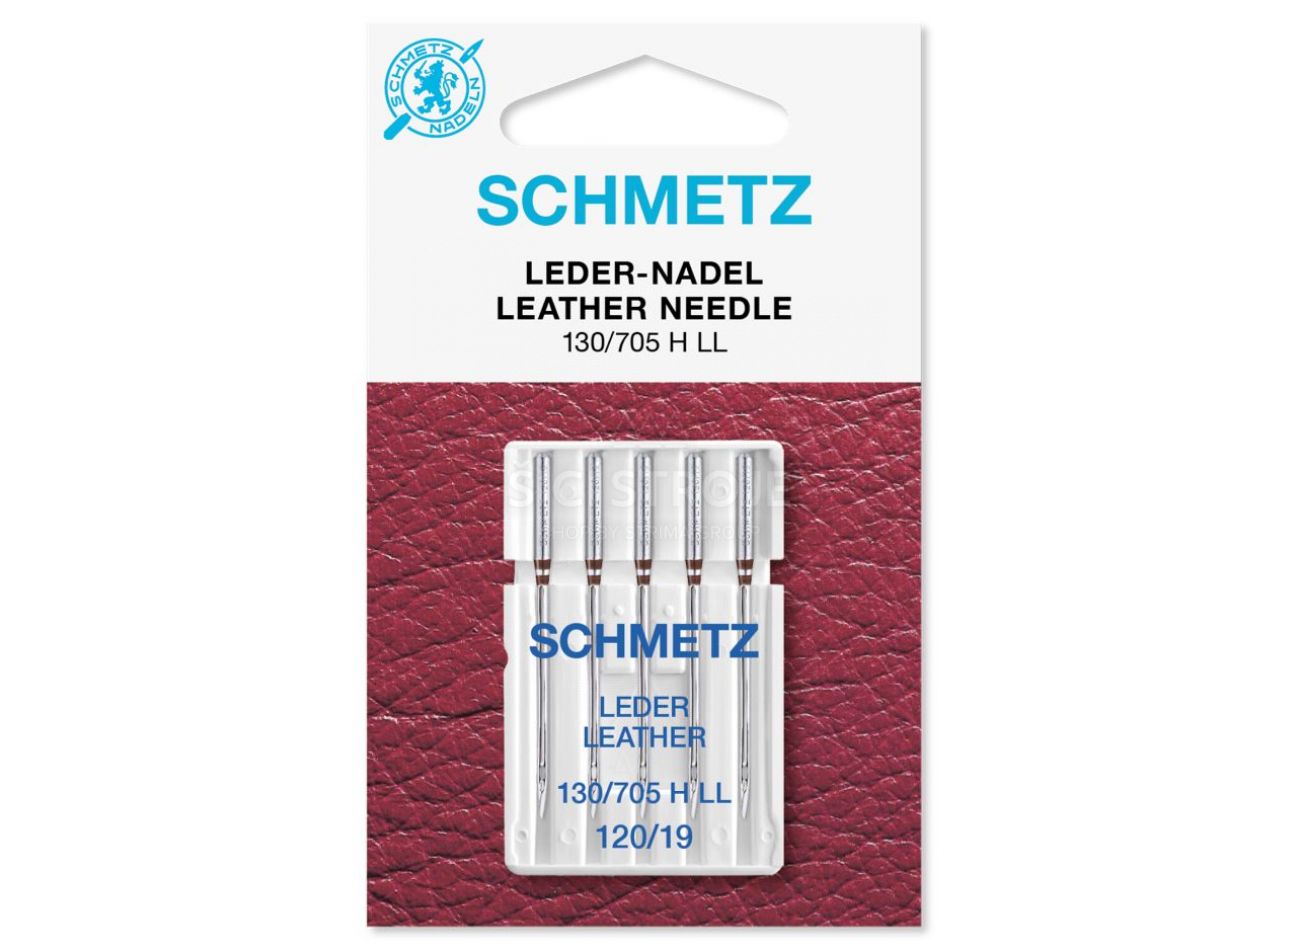 Schmetz ihly na kožu 130/705 H LL VGS 120